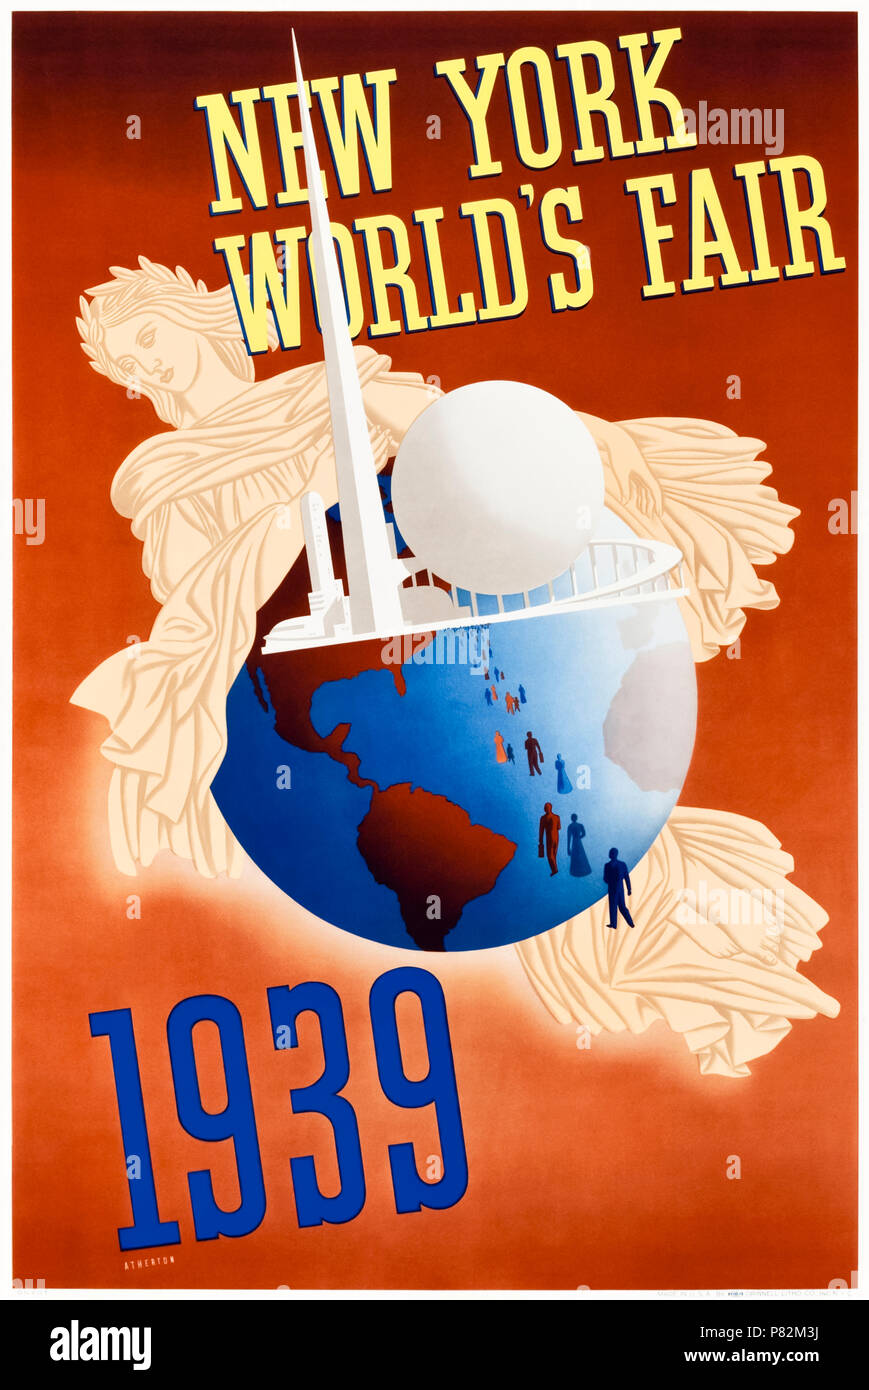 "In New York World's Fair 1939" - Poster von John Atherton (1900-1952), der die Trylon und Perisphere besucht von Menschen auf einem Globus umarmt von Libertas. Weitere Informationen finden Sie unten. Stockfoto